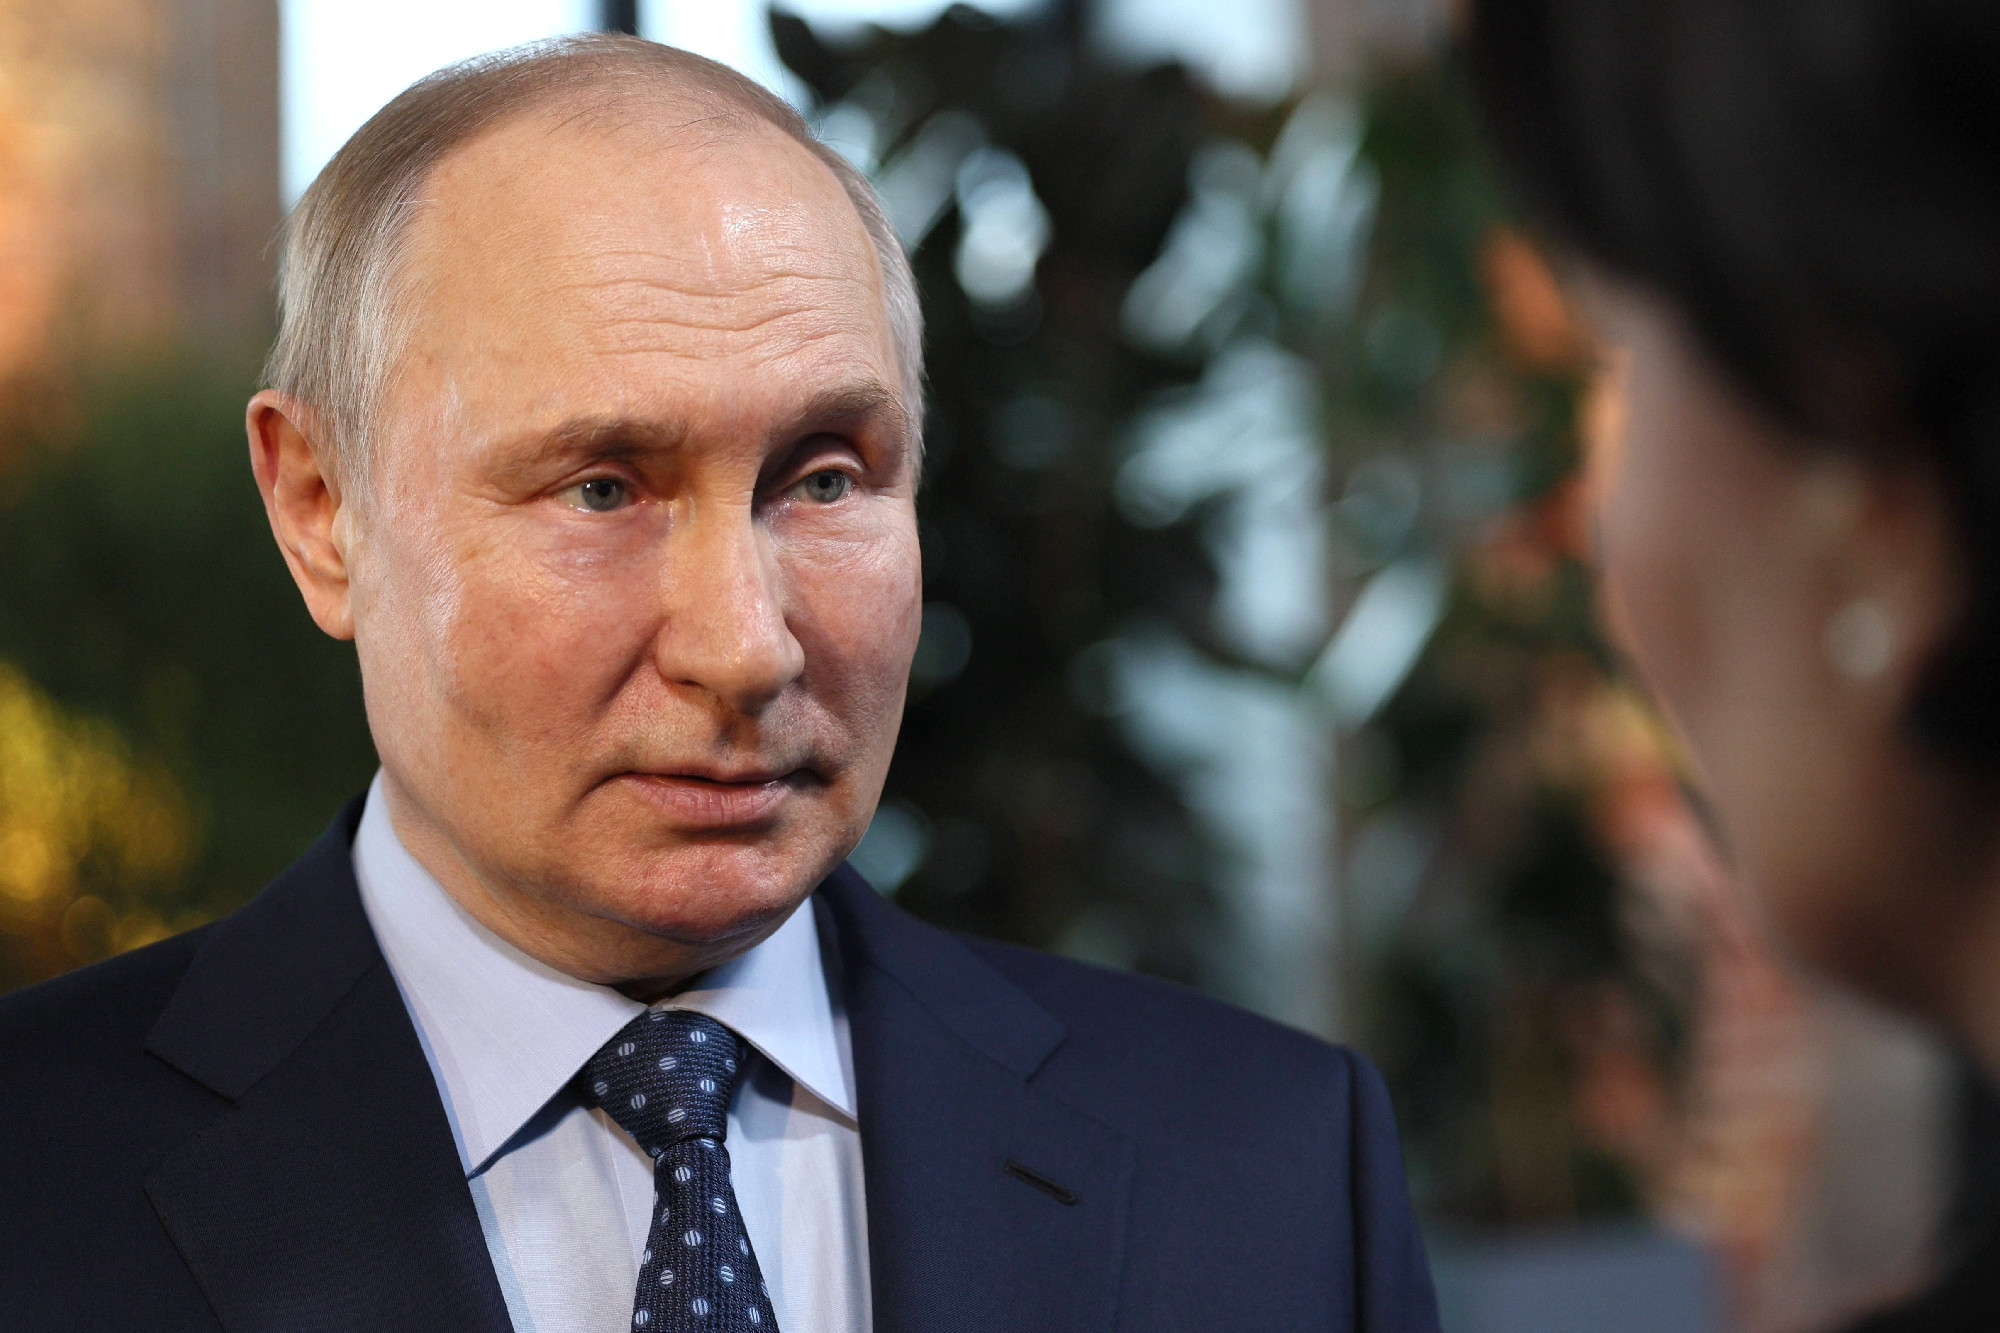 Kreml: hackertámadás történt, Putyin nem mondott rendkívüli beszédet